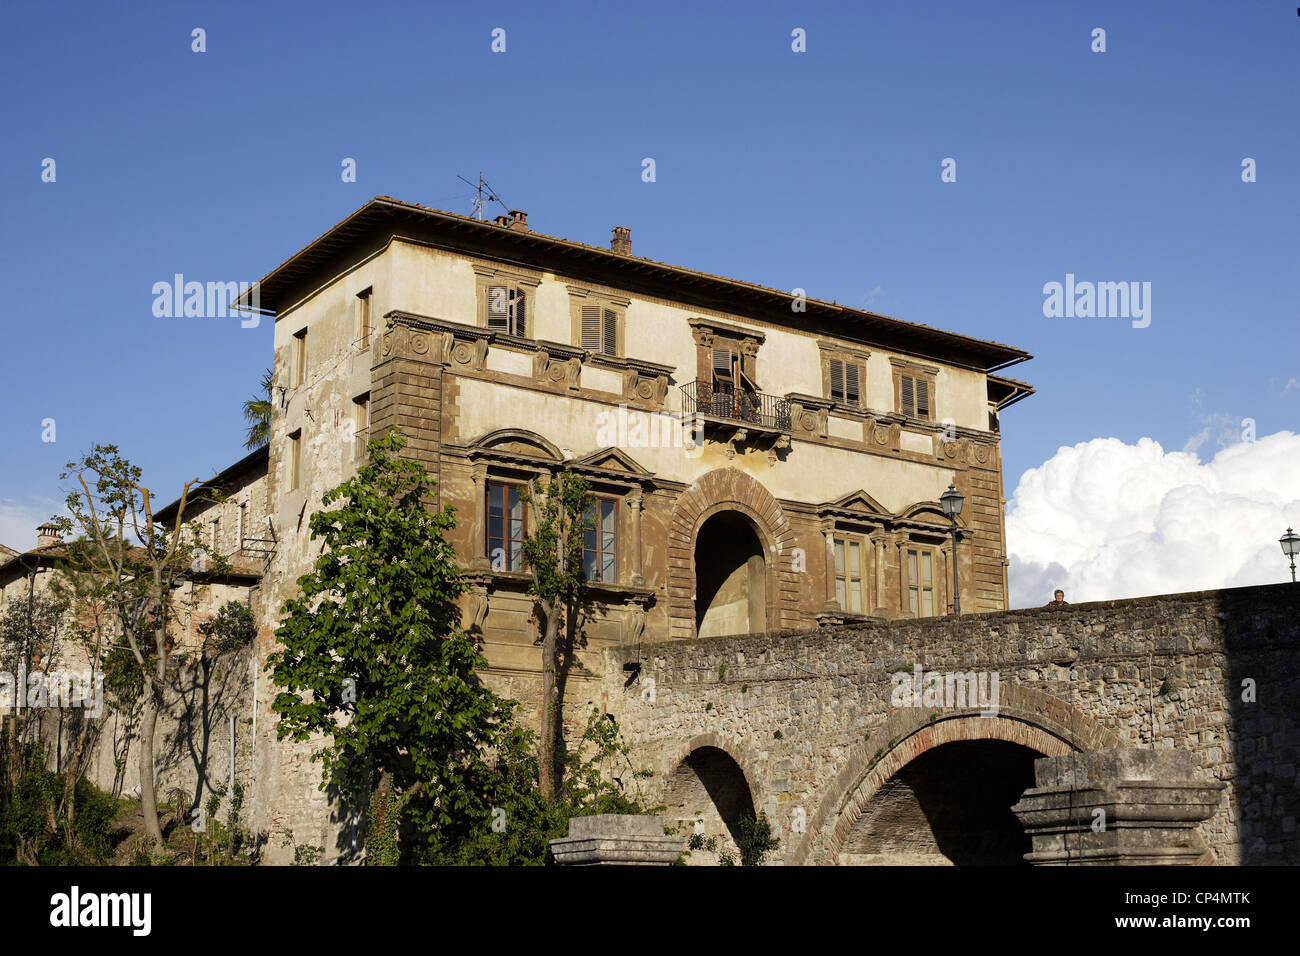 Campana Palace. Italy, Tuscany Region, Colle Val d'Elsa (Si). Stock Photo